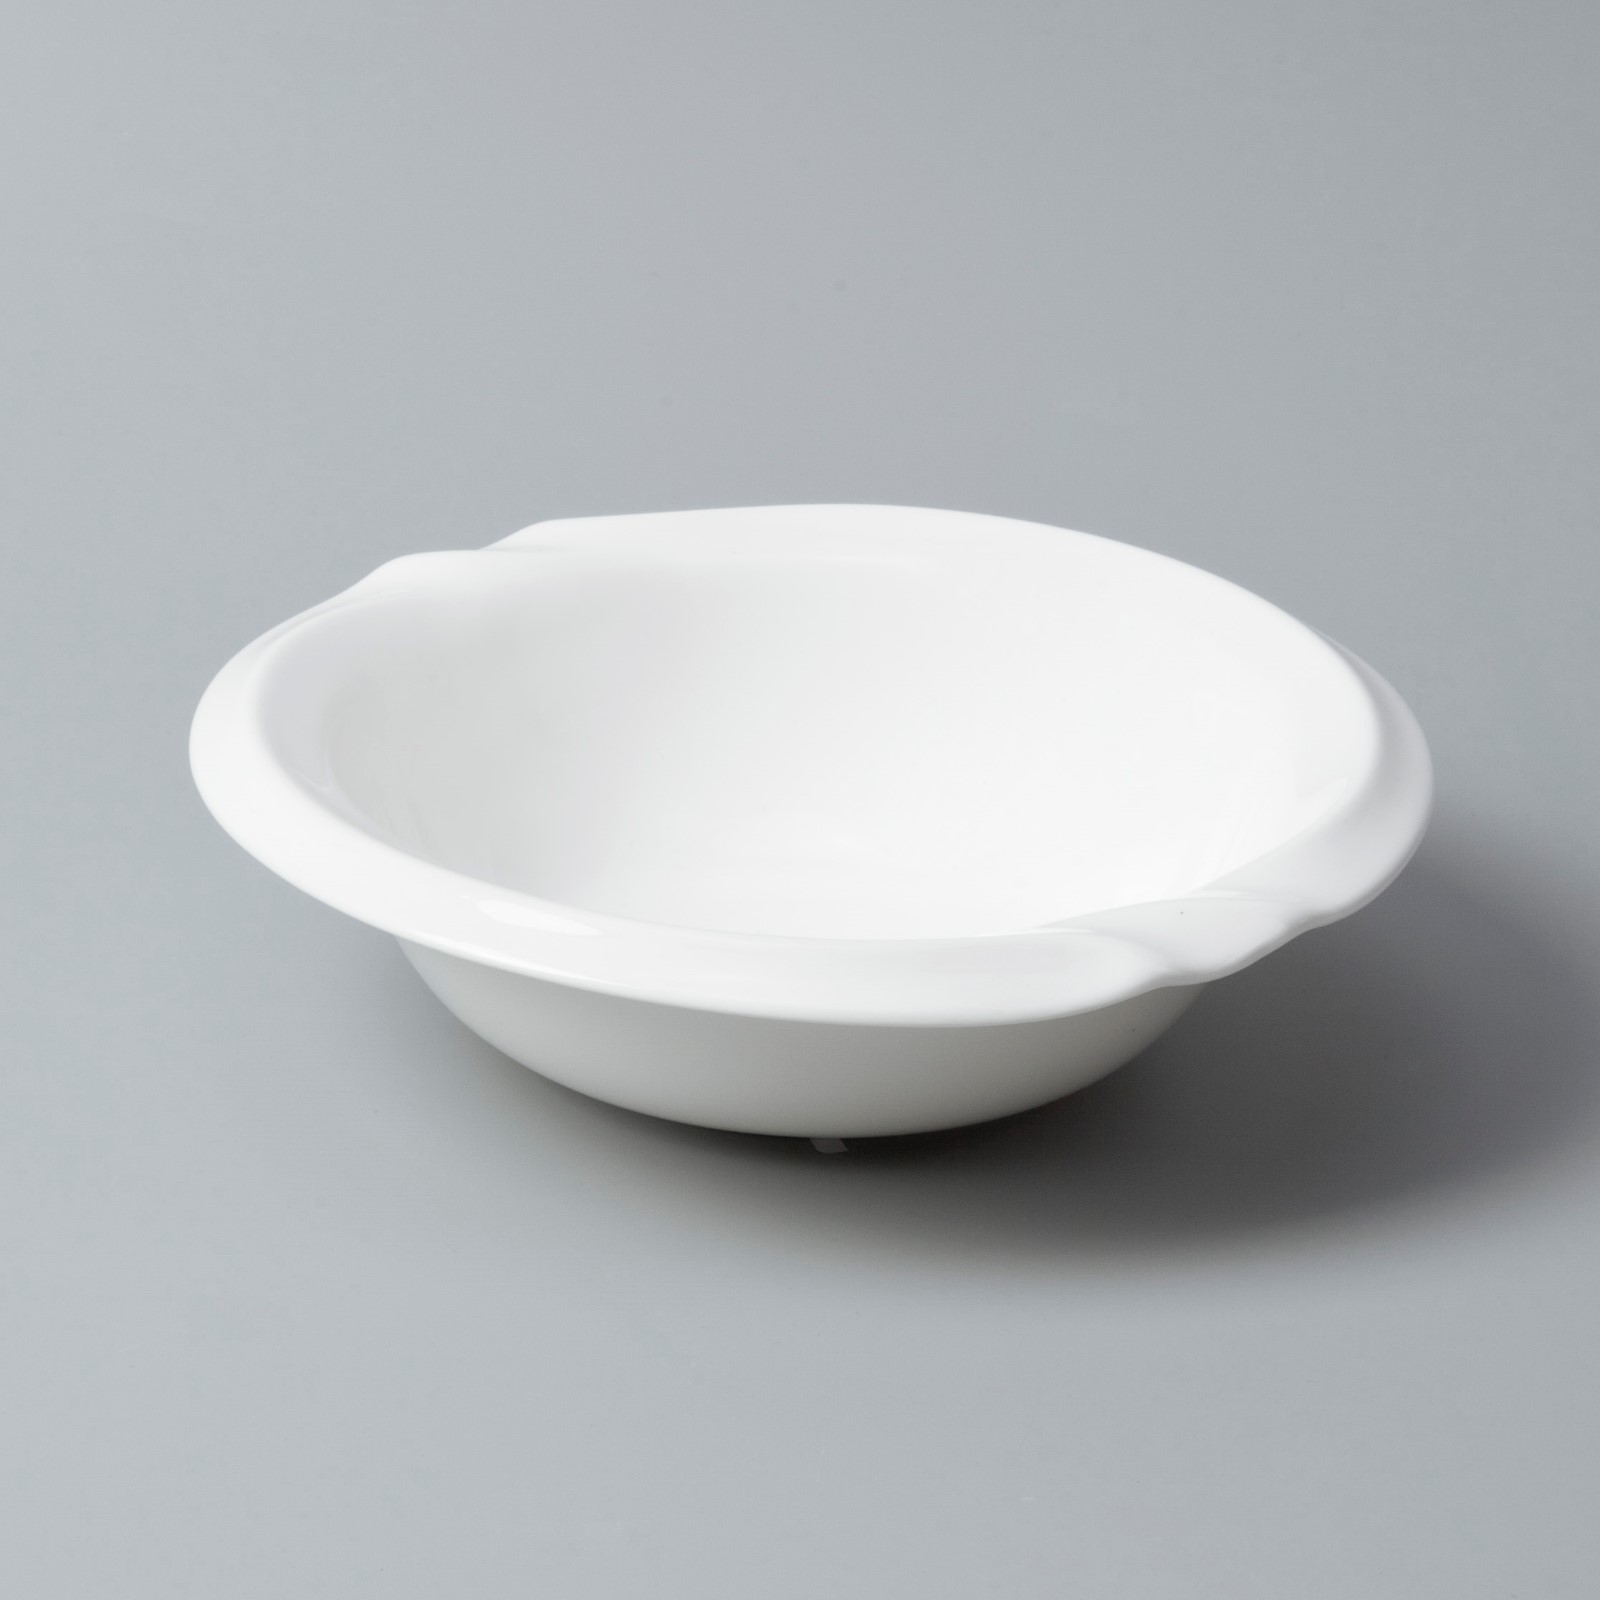 sample fine ceramic dinnerware stock for dinning room Two Eight-3